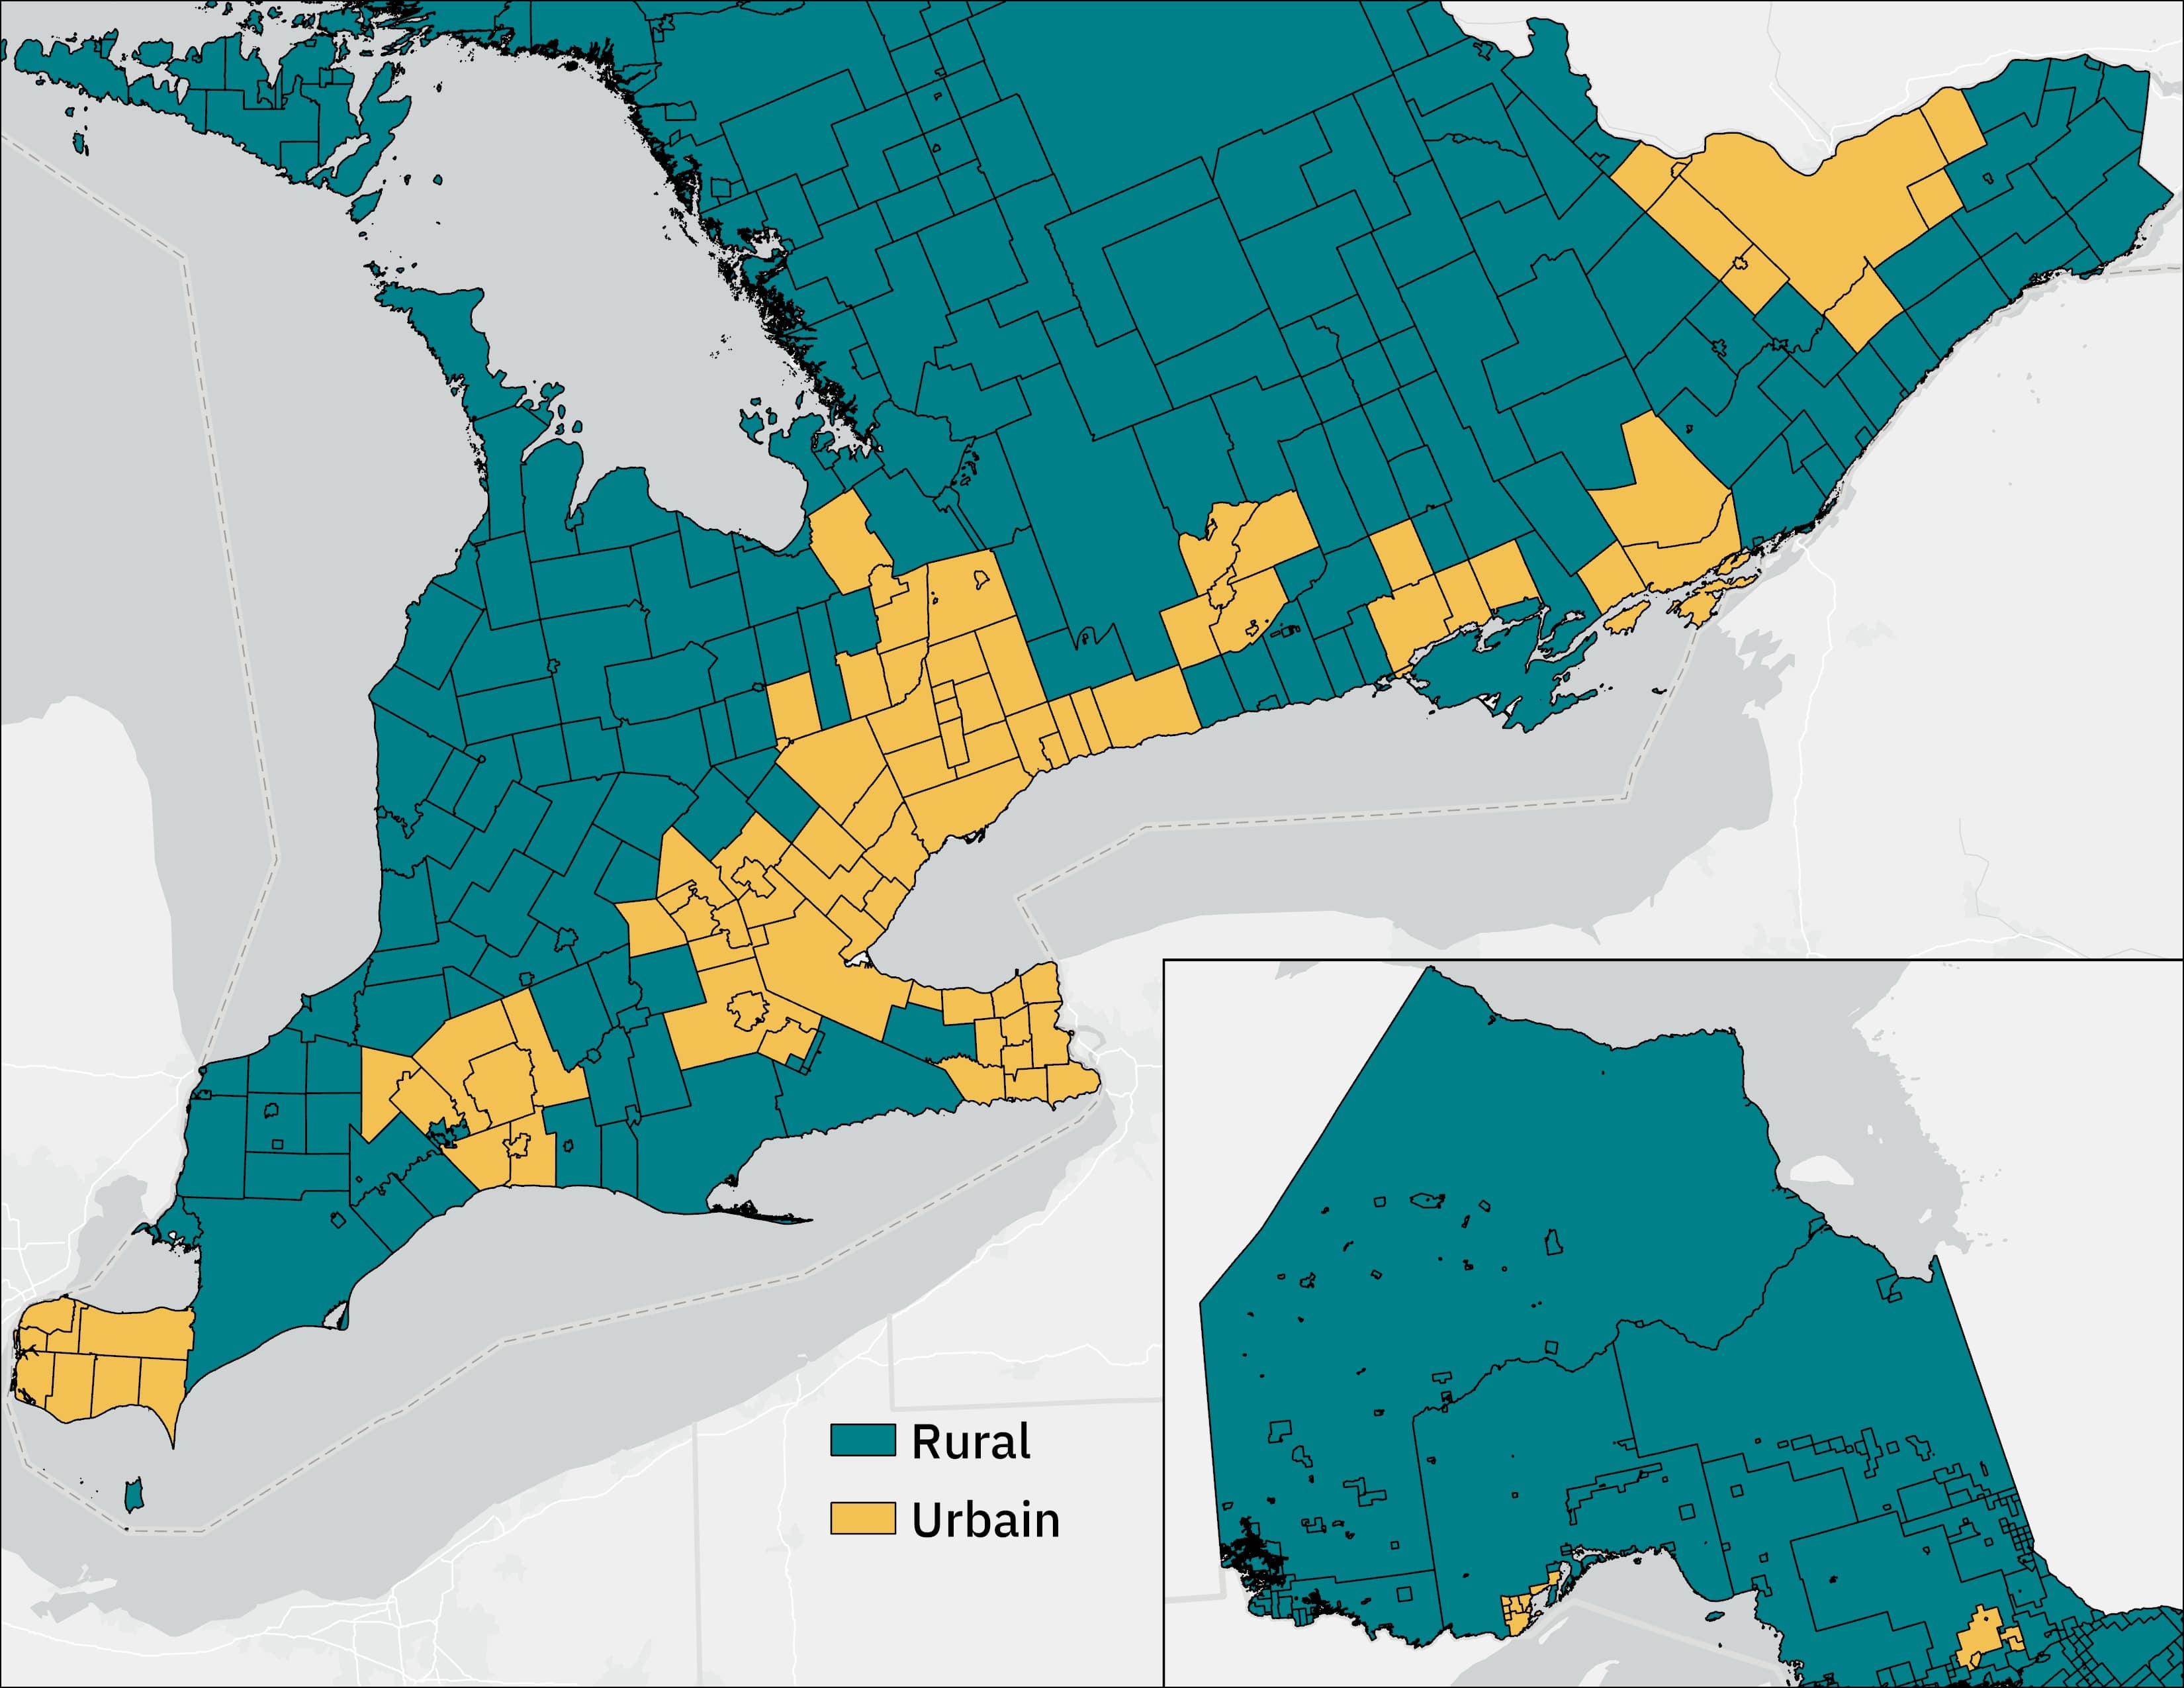 Cette carte de l’Ontario illustre la définition de l’Ontario rural et urbain en fonction des régions métropolitaines de recensement (régions urbaines) et des zones hors région métropolitaine de recensement (régions rurales) selon les limites géographiques de 2021.